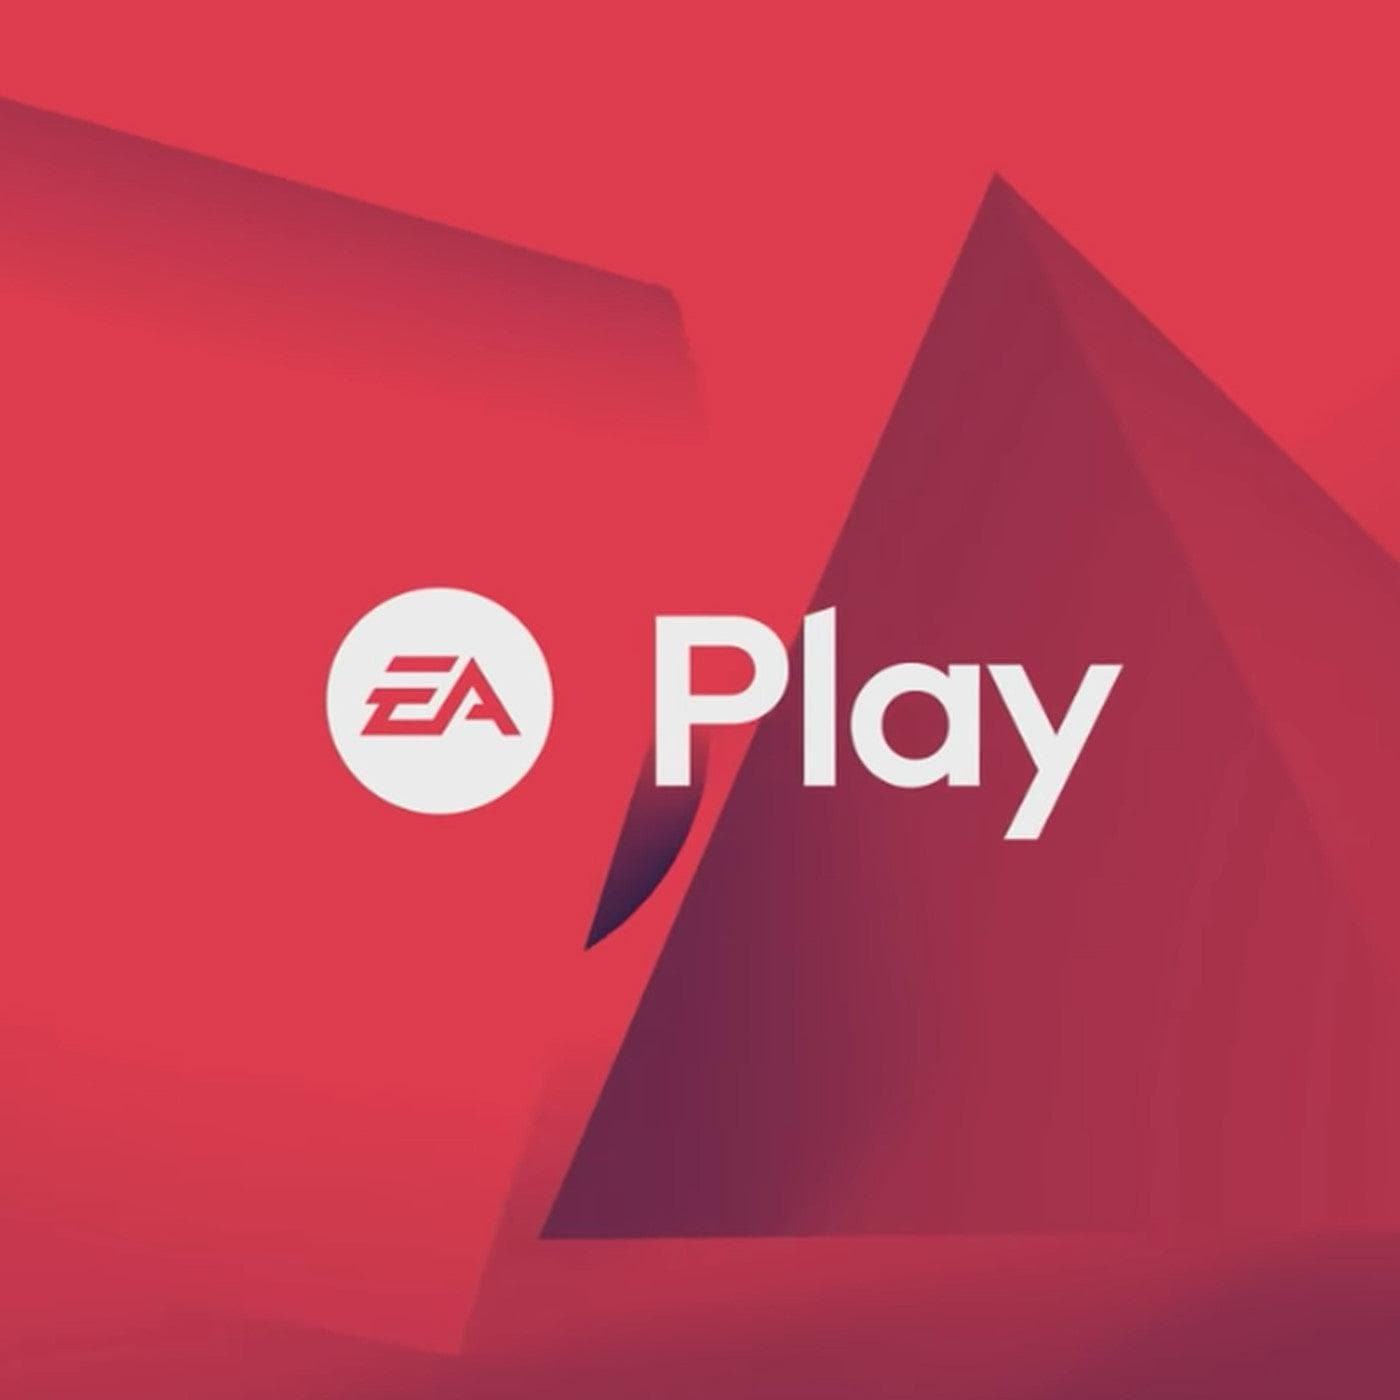 EA Play - Xbox מנוי ניסיון לחודש - EXON - גיימינג ותוכנות - משחקים ותוכנות למחשב ולאקס בוקס!